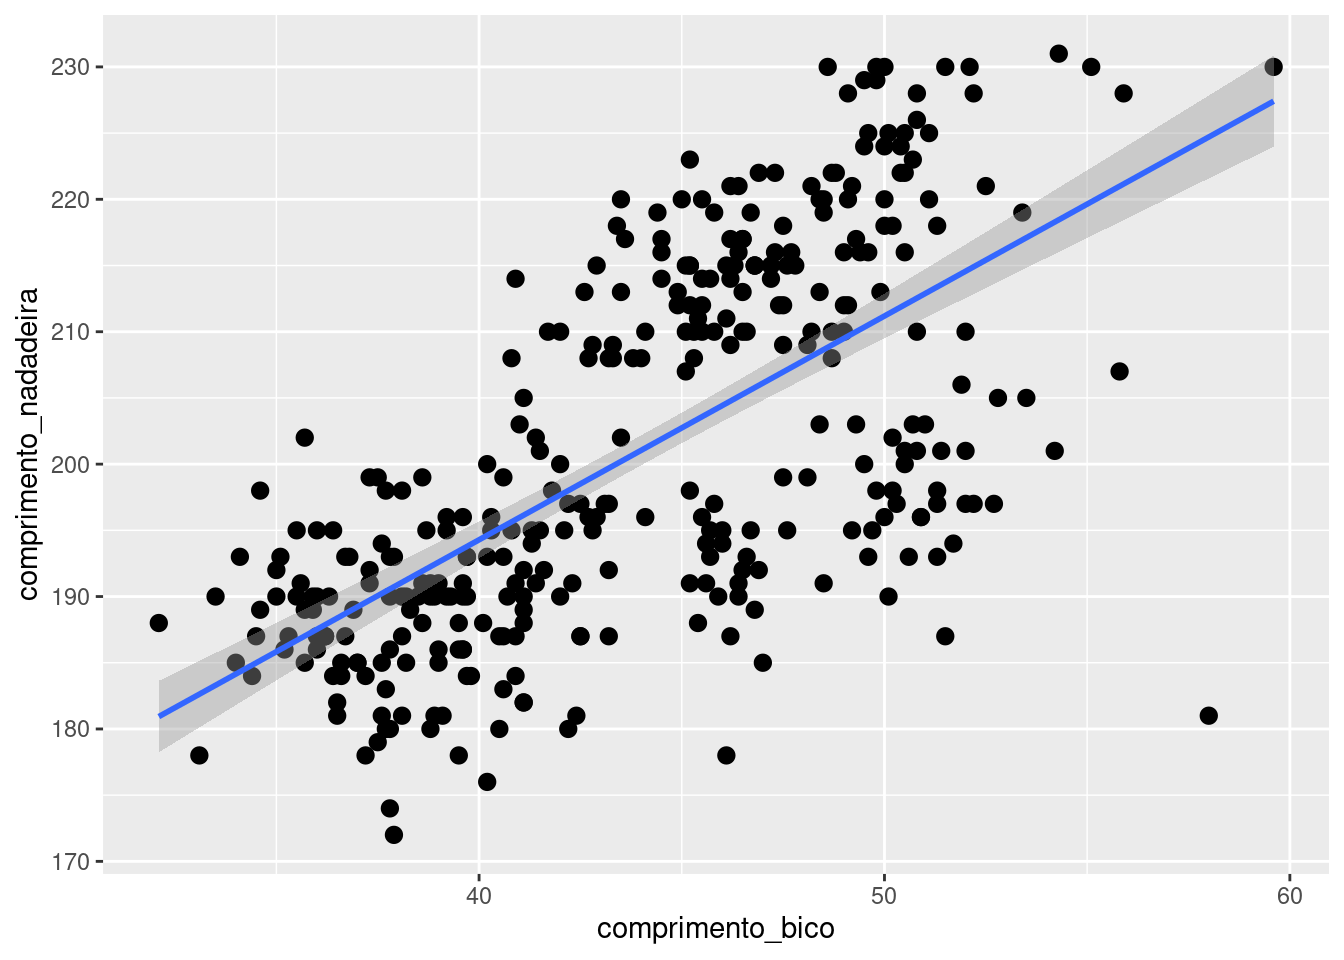 Gráfico de dispersão relacionando as variáveis `comprimento_bico` e `comprimento_nadadeira` para cada espécie de penguim, com linhas de ajustes estatísticos.